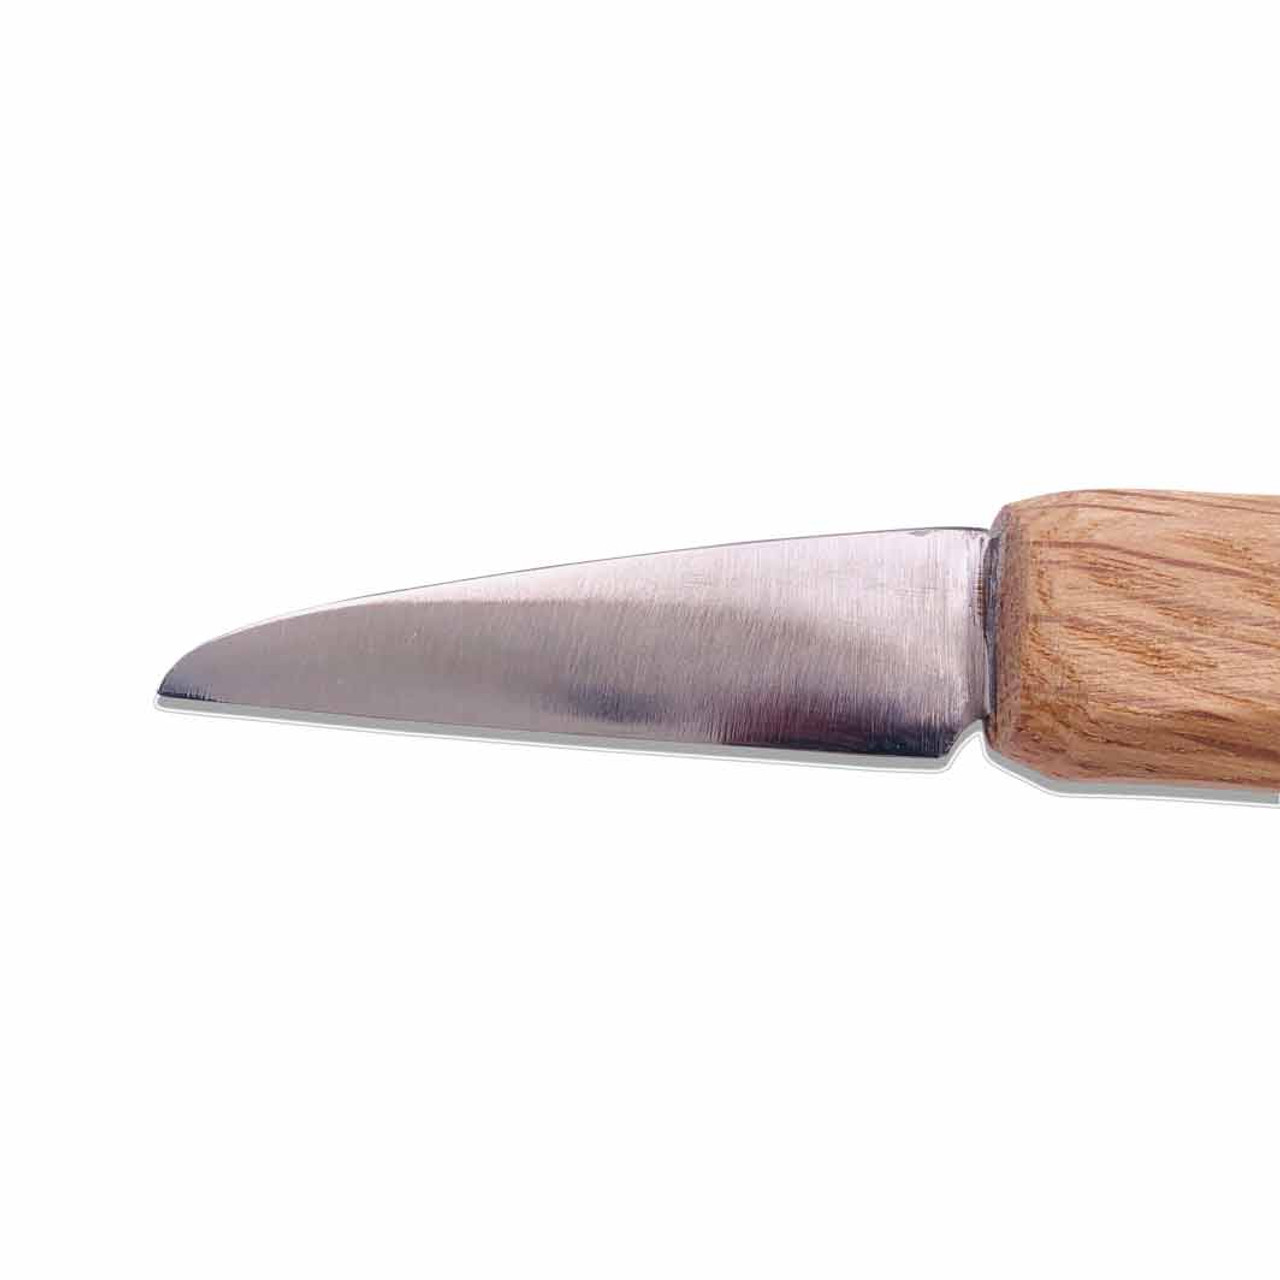 Flexcut 8 inch x 2 inch Leather Knife Strop w/ Polishing Compound